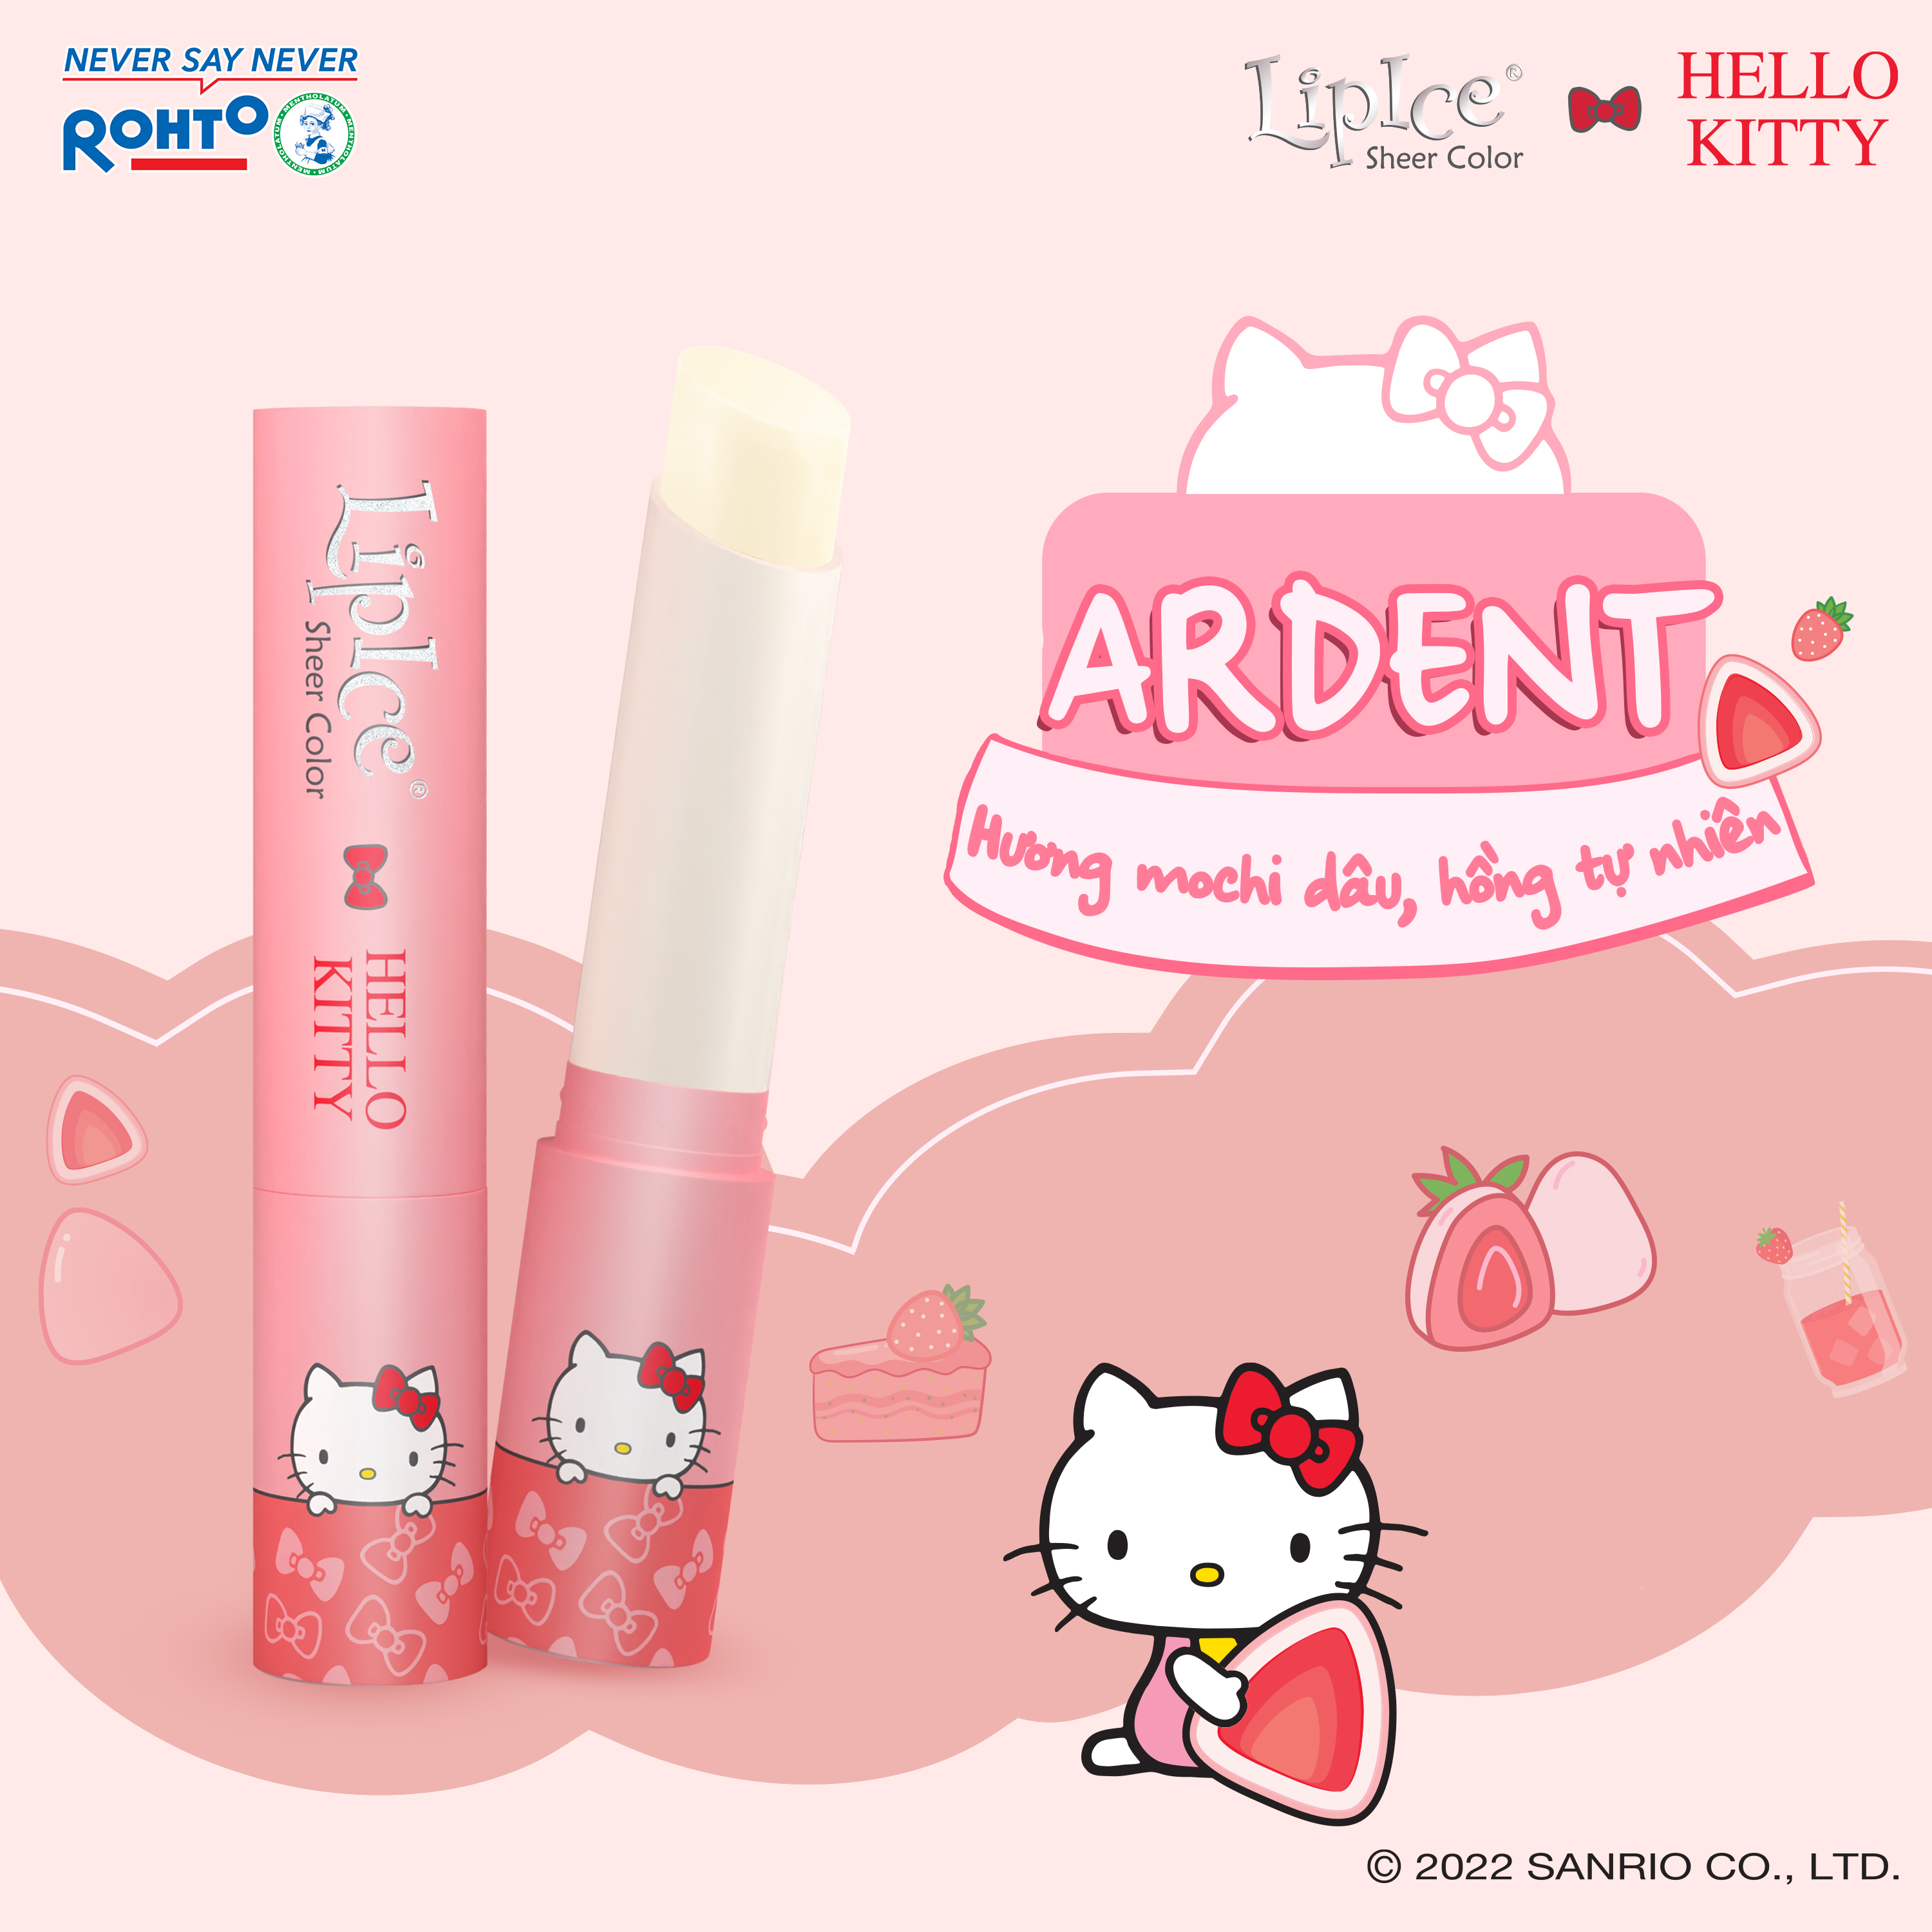 Son dưỡng hiệu chỉnh sắc môi tự nhiên LipIce Sheer Color x Hello Kitty 2.4g (Phiên bản giới hạn)